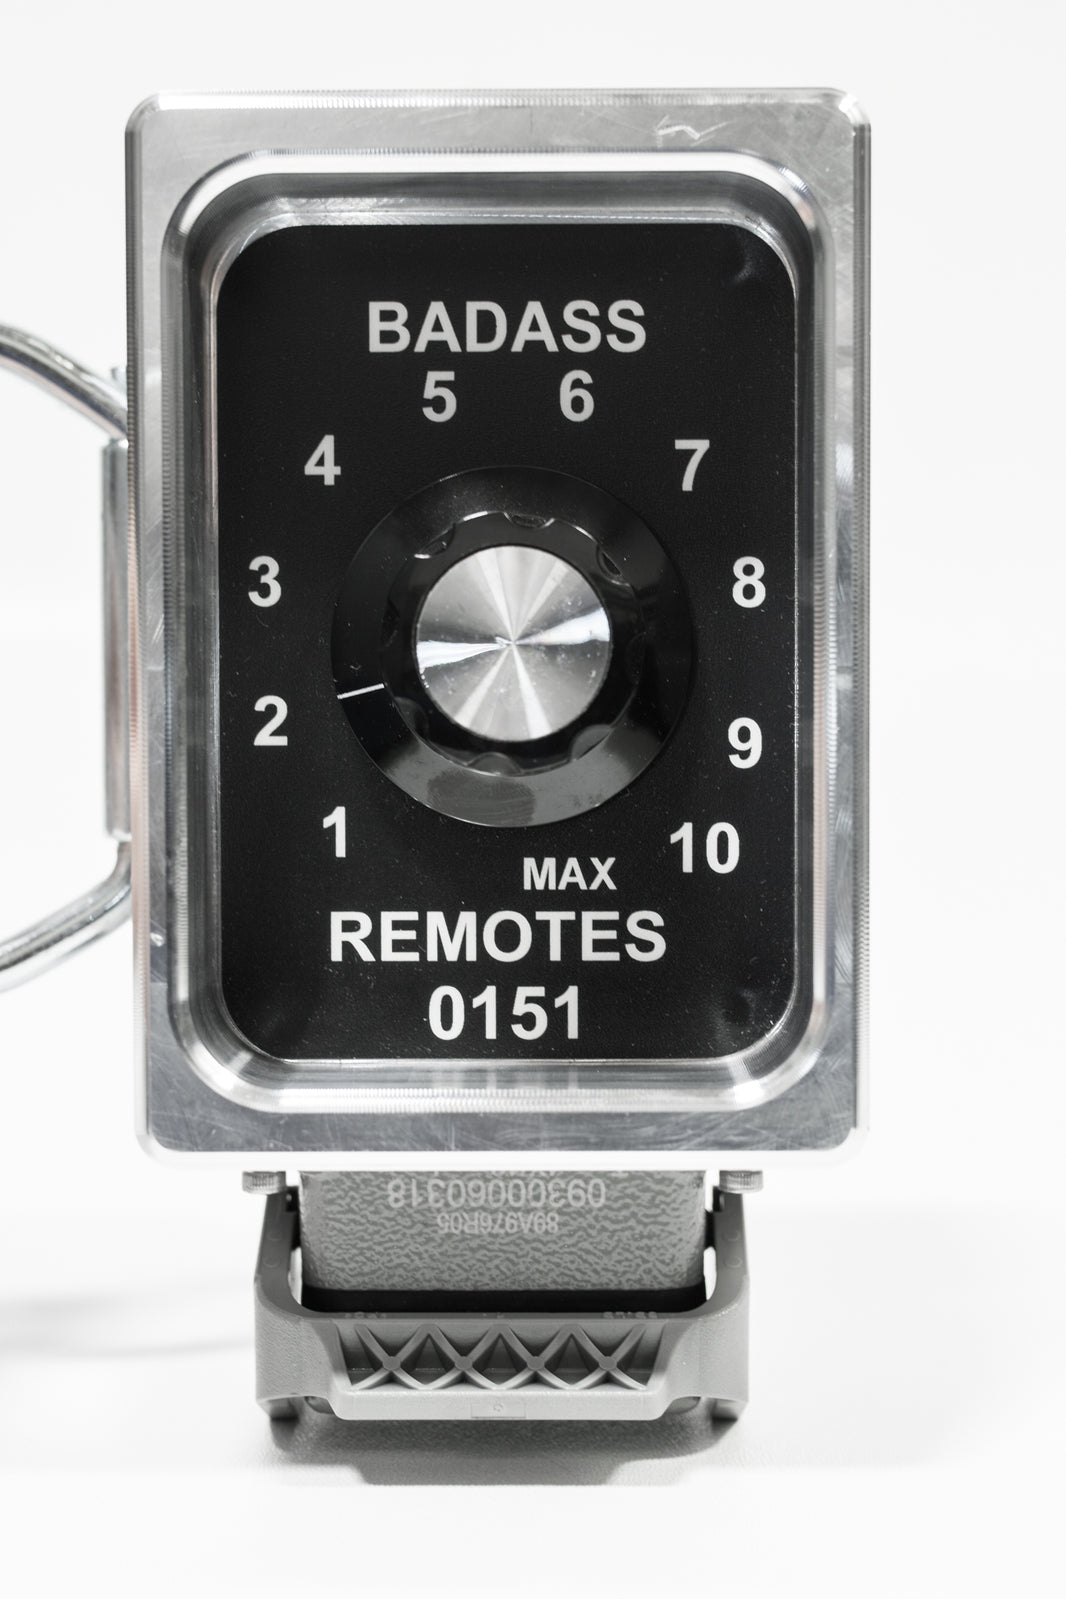 BadAssReels Lincoln Welder Remote Control